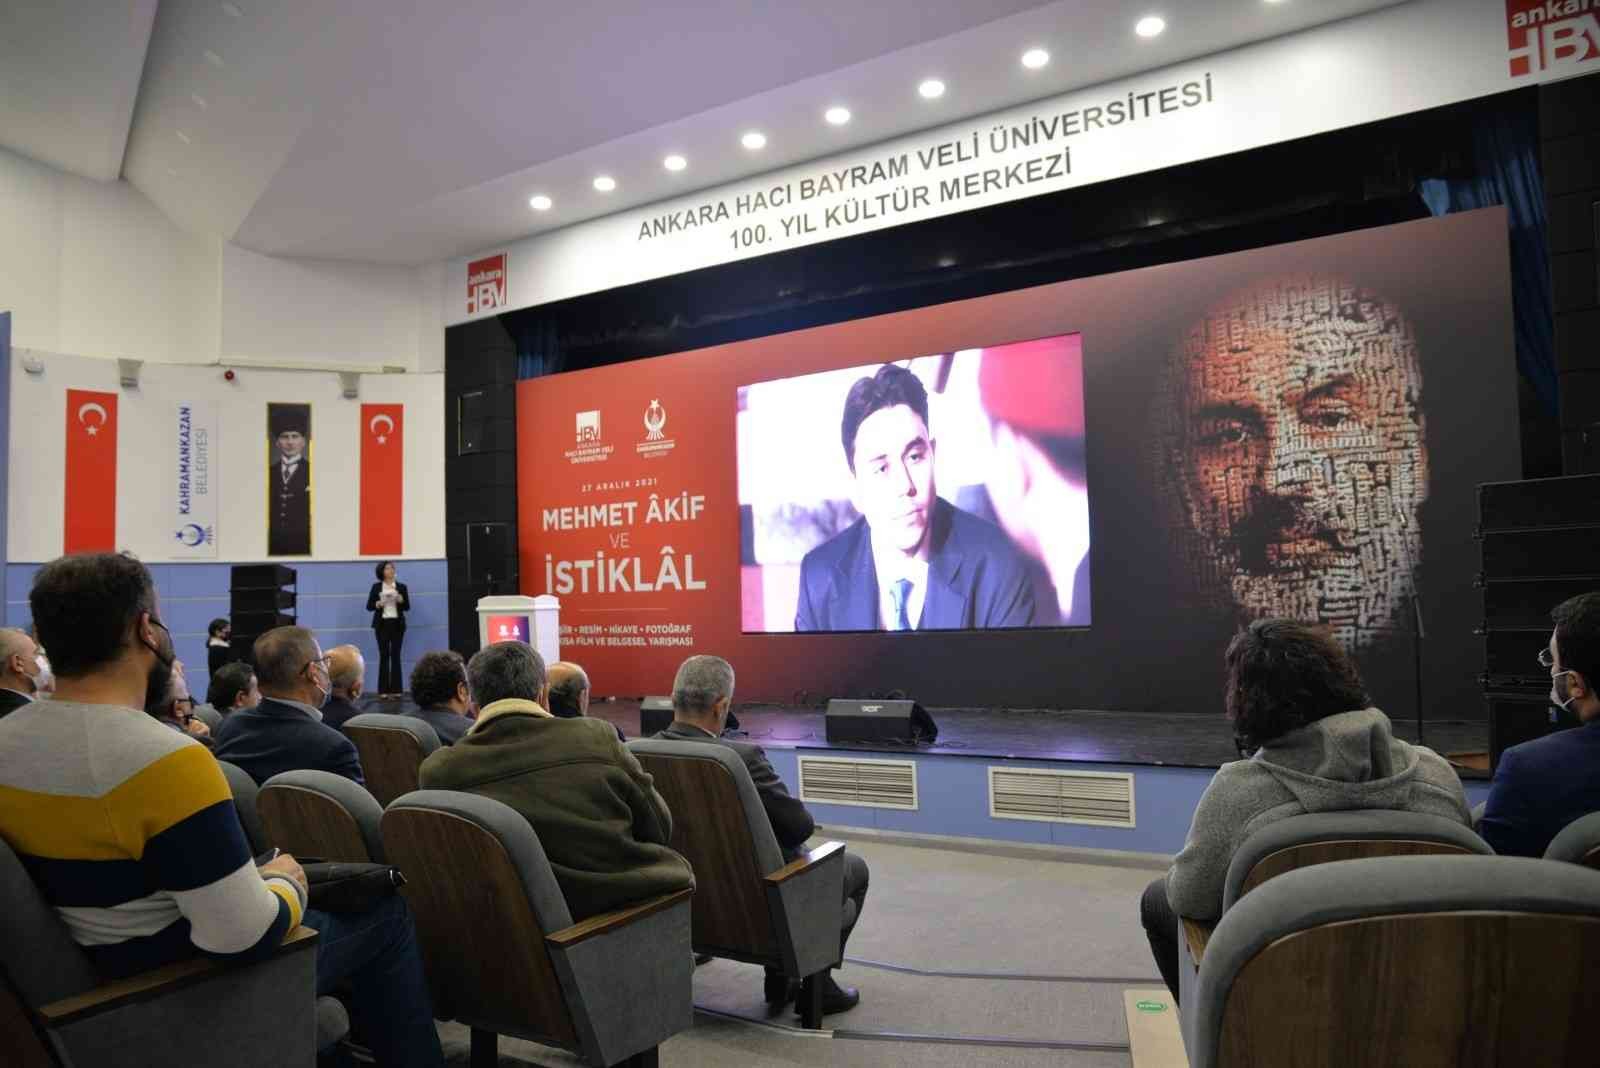 Mehmet Akif ve İstiklal Marşı Yılı’nda anlamlı ödüller #ankara